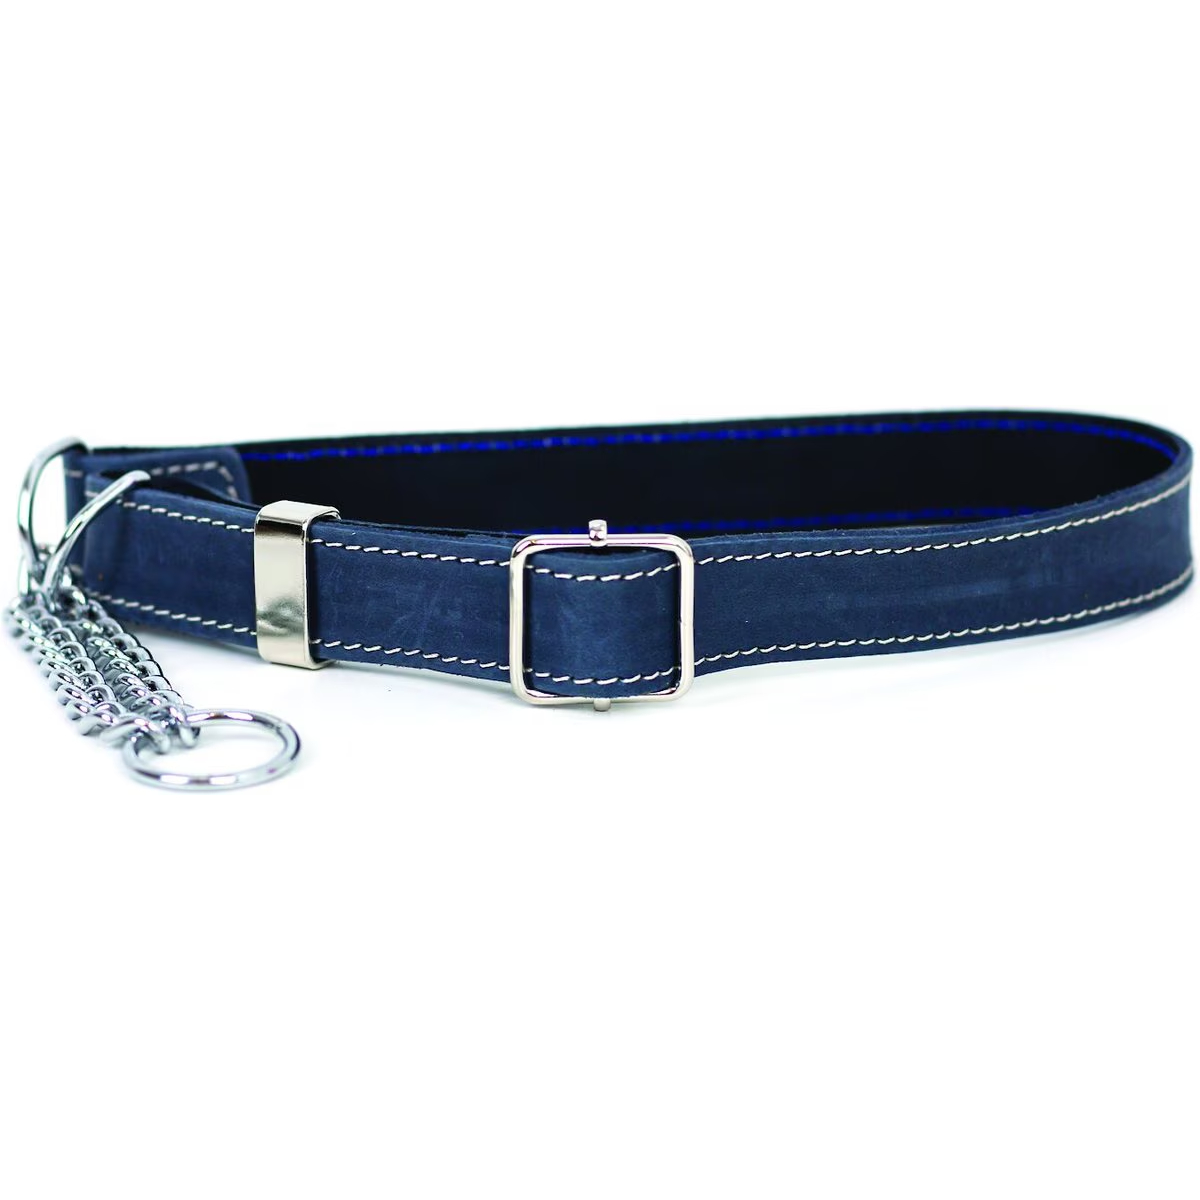 Euro-Dog Luxury Leather Dog Collar